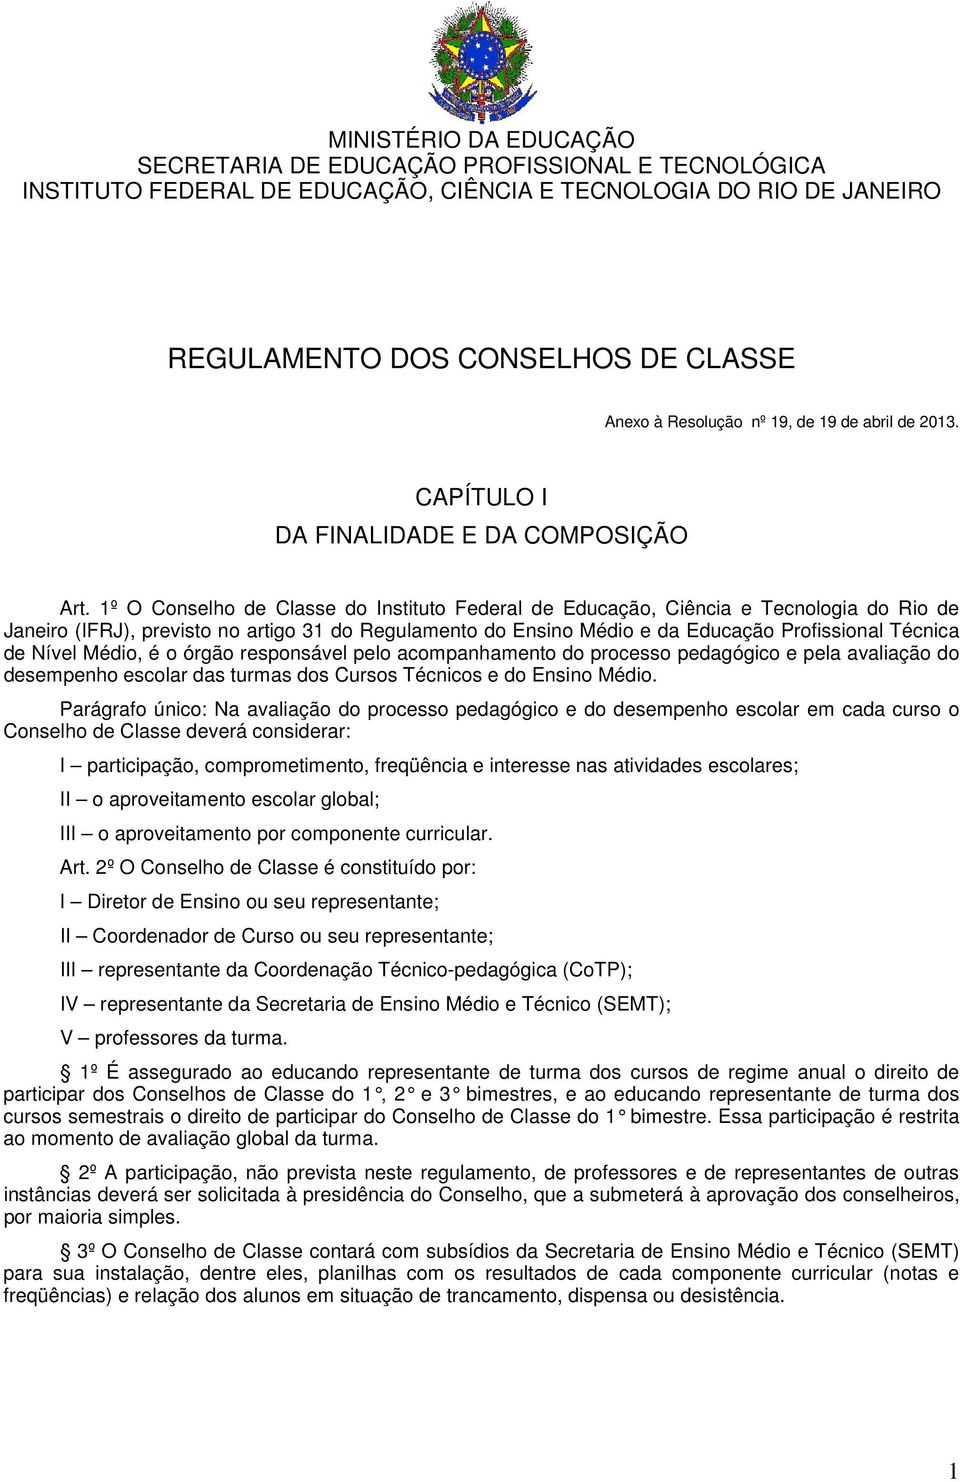 1º O Conselho de Classe do Instituto Federal de Educação, Ciência e Tecnologia do Rio de Janeiro (IFRJ), previsto no artigo 31 do Regulamento do Ensino Médio e da Educação Profissional Técnica de